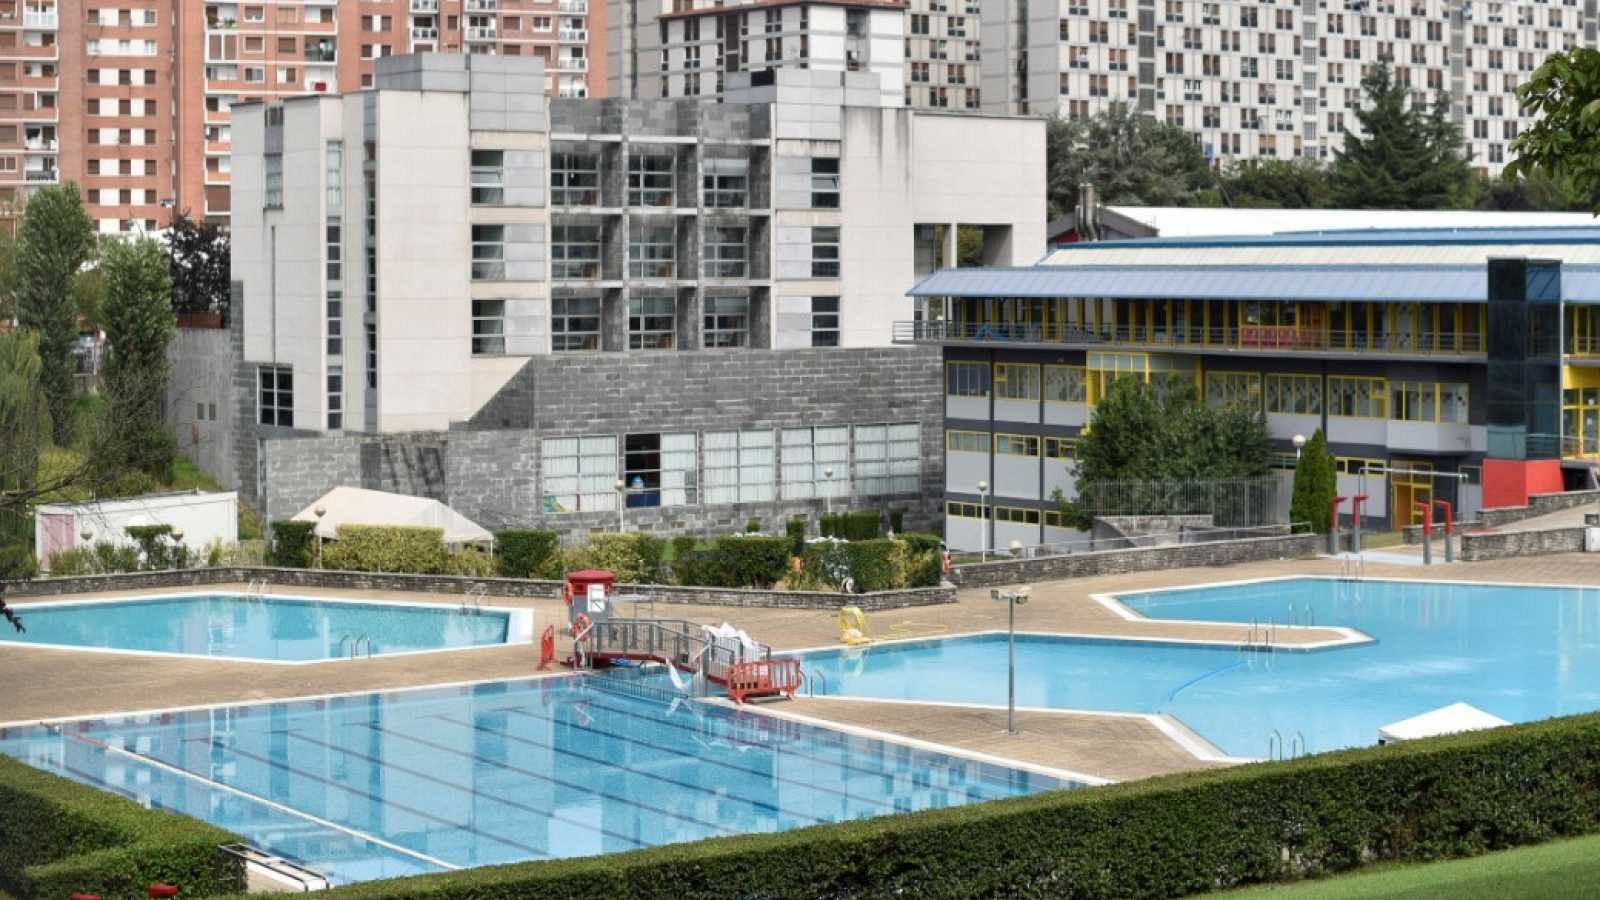 Las piscinas comunitarias se plantean si abrirán este verano debido a las restricciones